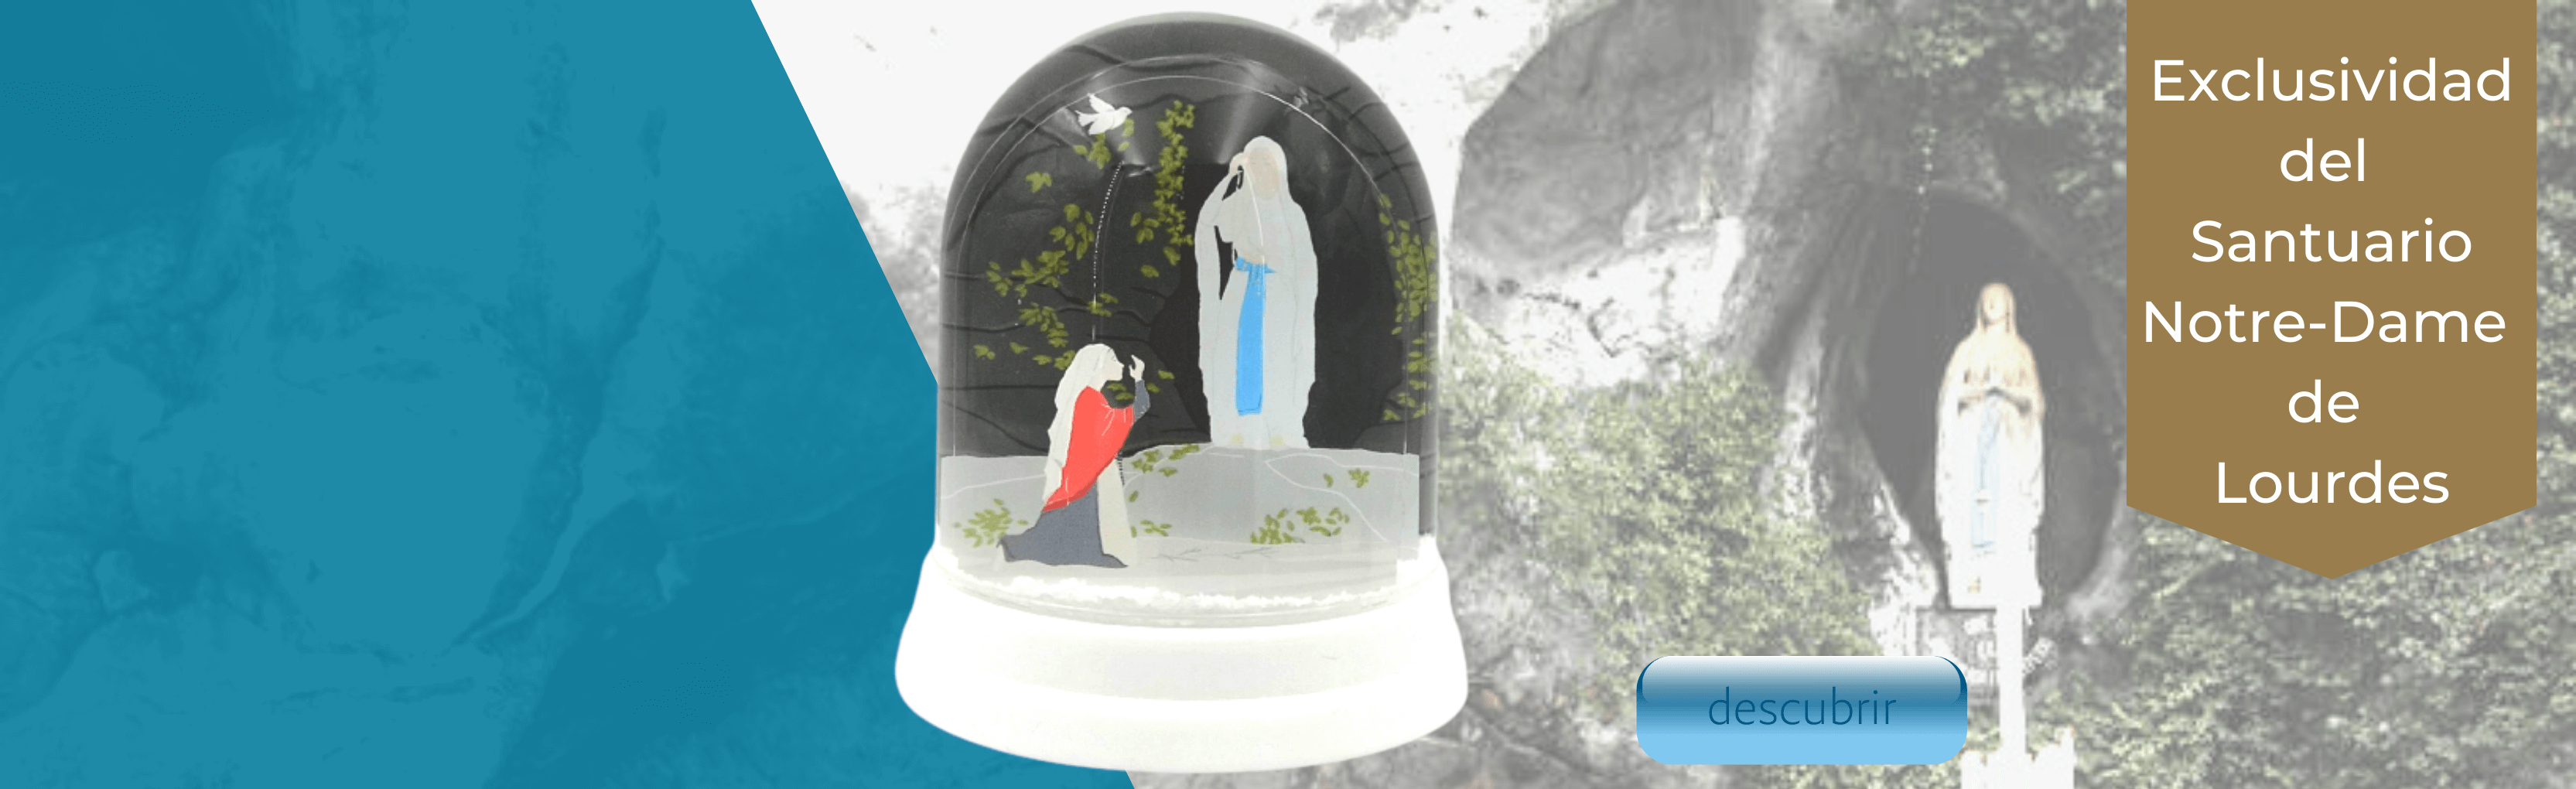 Bola de nieve , una exclusiva del Santuario de Nuestra Señora de Lourdes